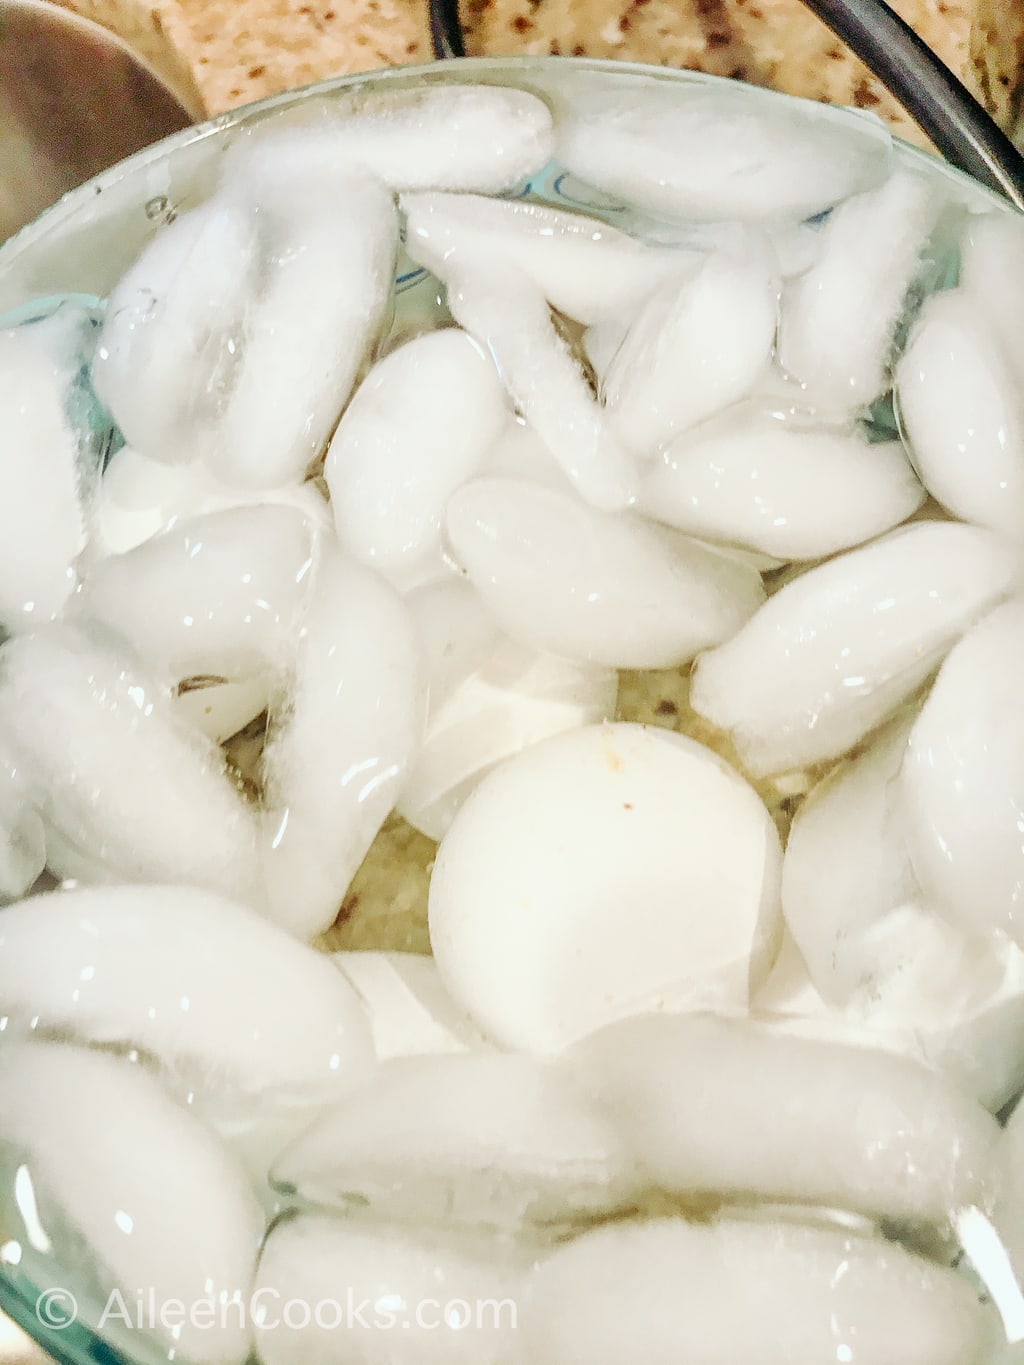 Eggs inside an ice bath.